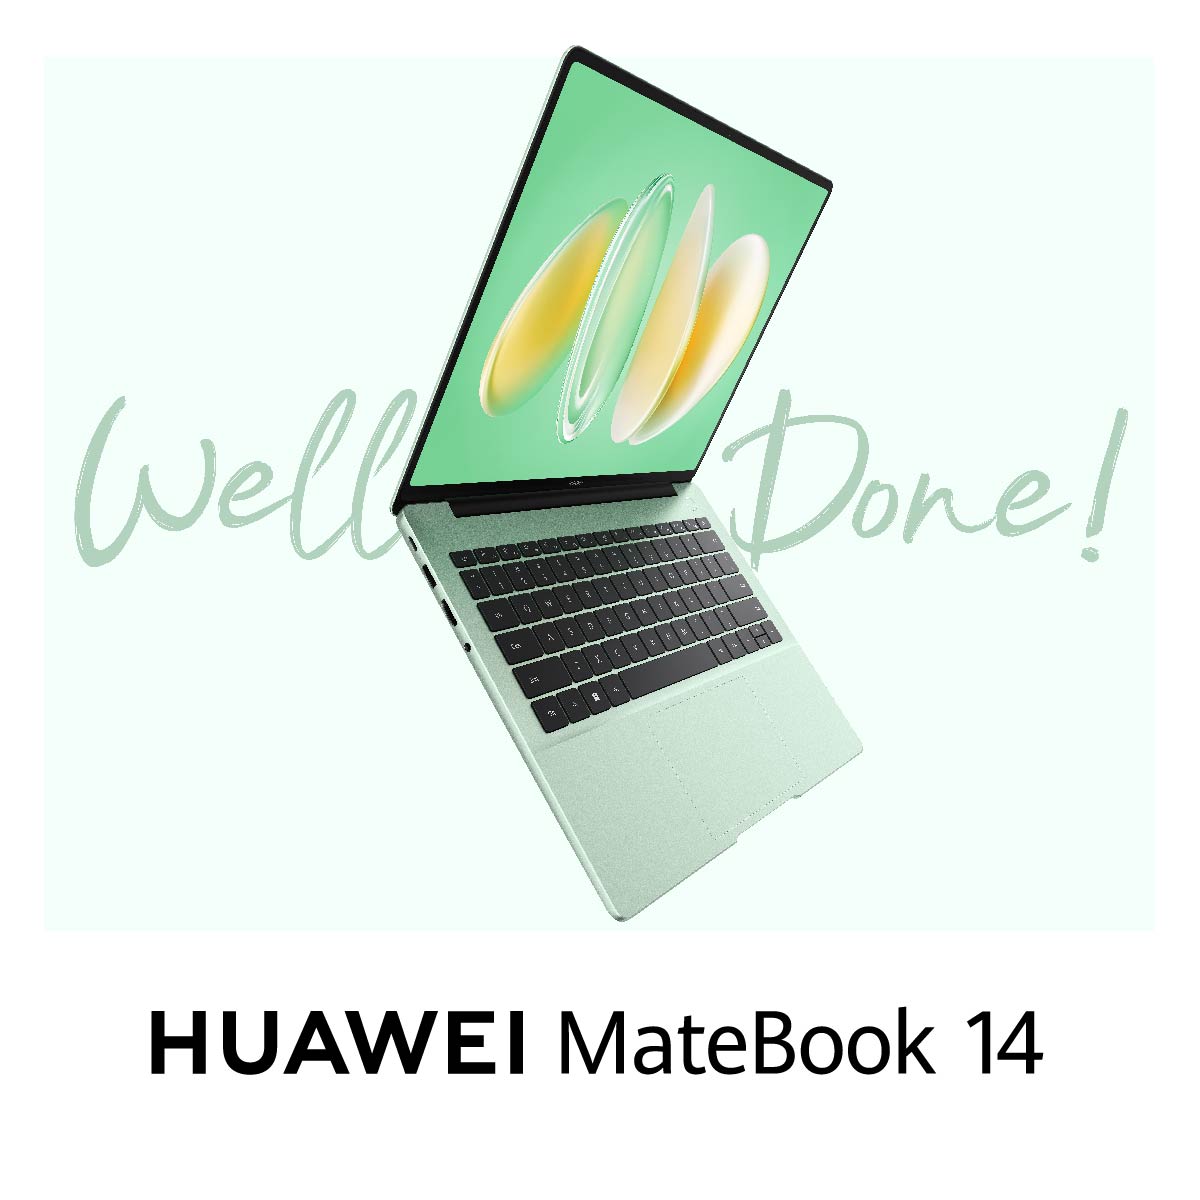 Descubre la nueva #HUAWEIMateBook14, la fusión perfecta entre máximo confort y estética elegante ✨. Aprovecha ya su oferta de lanzamiento en HUAWEI Store 👉 bit.ly/4dH3CRy